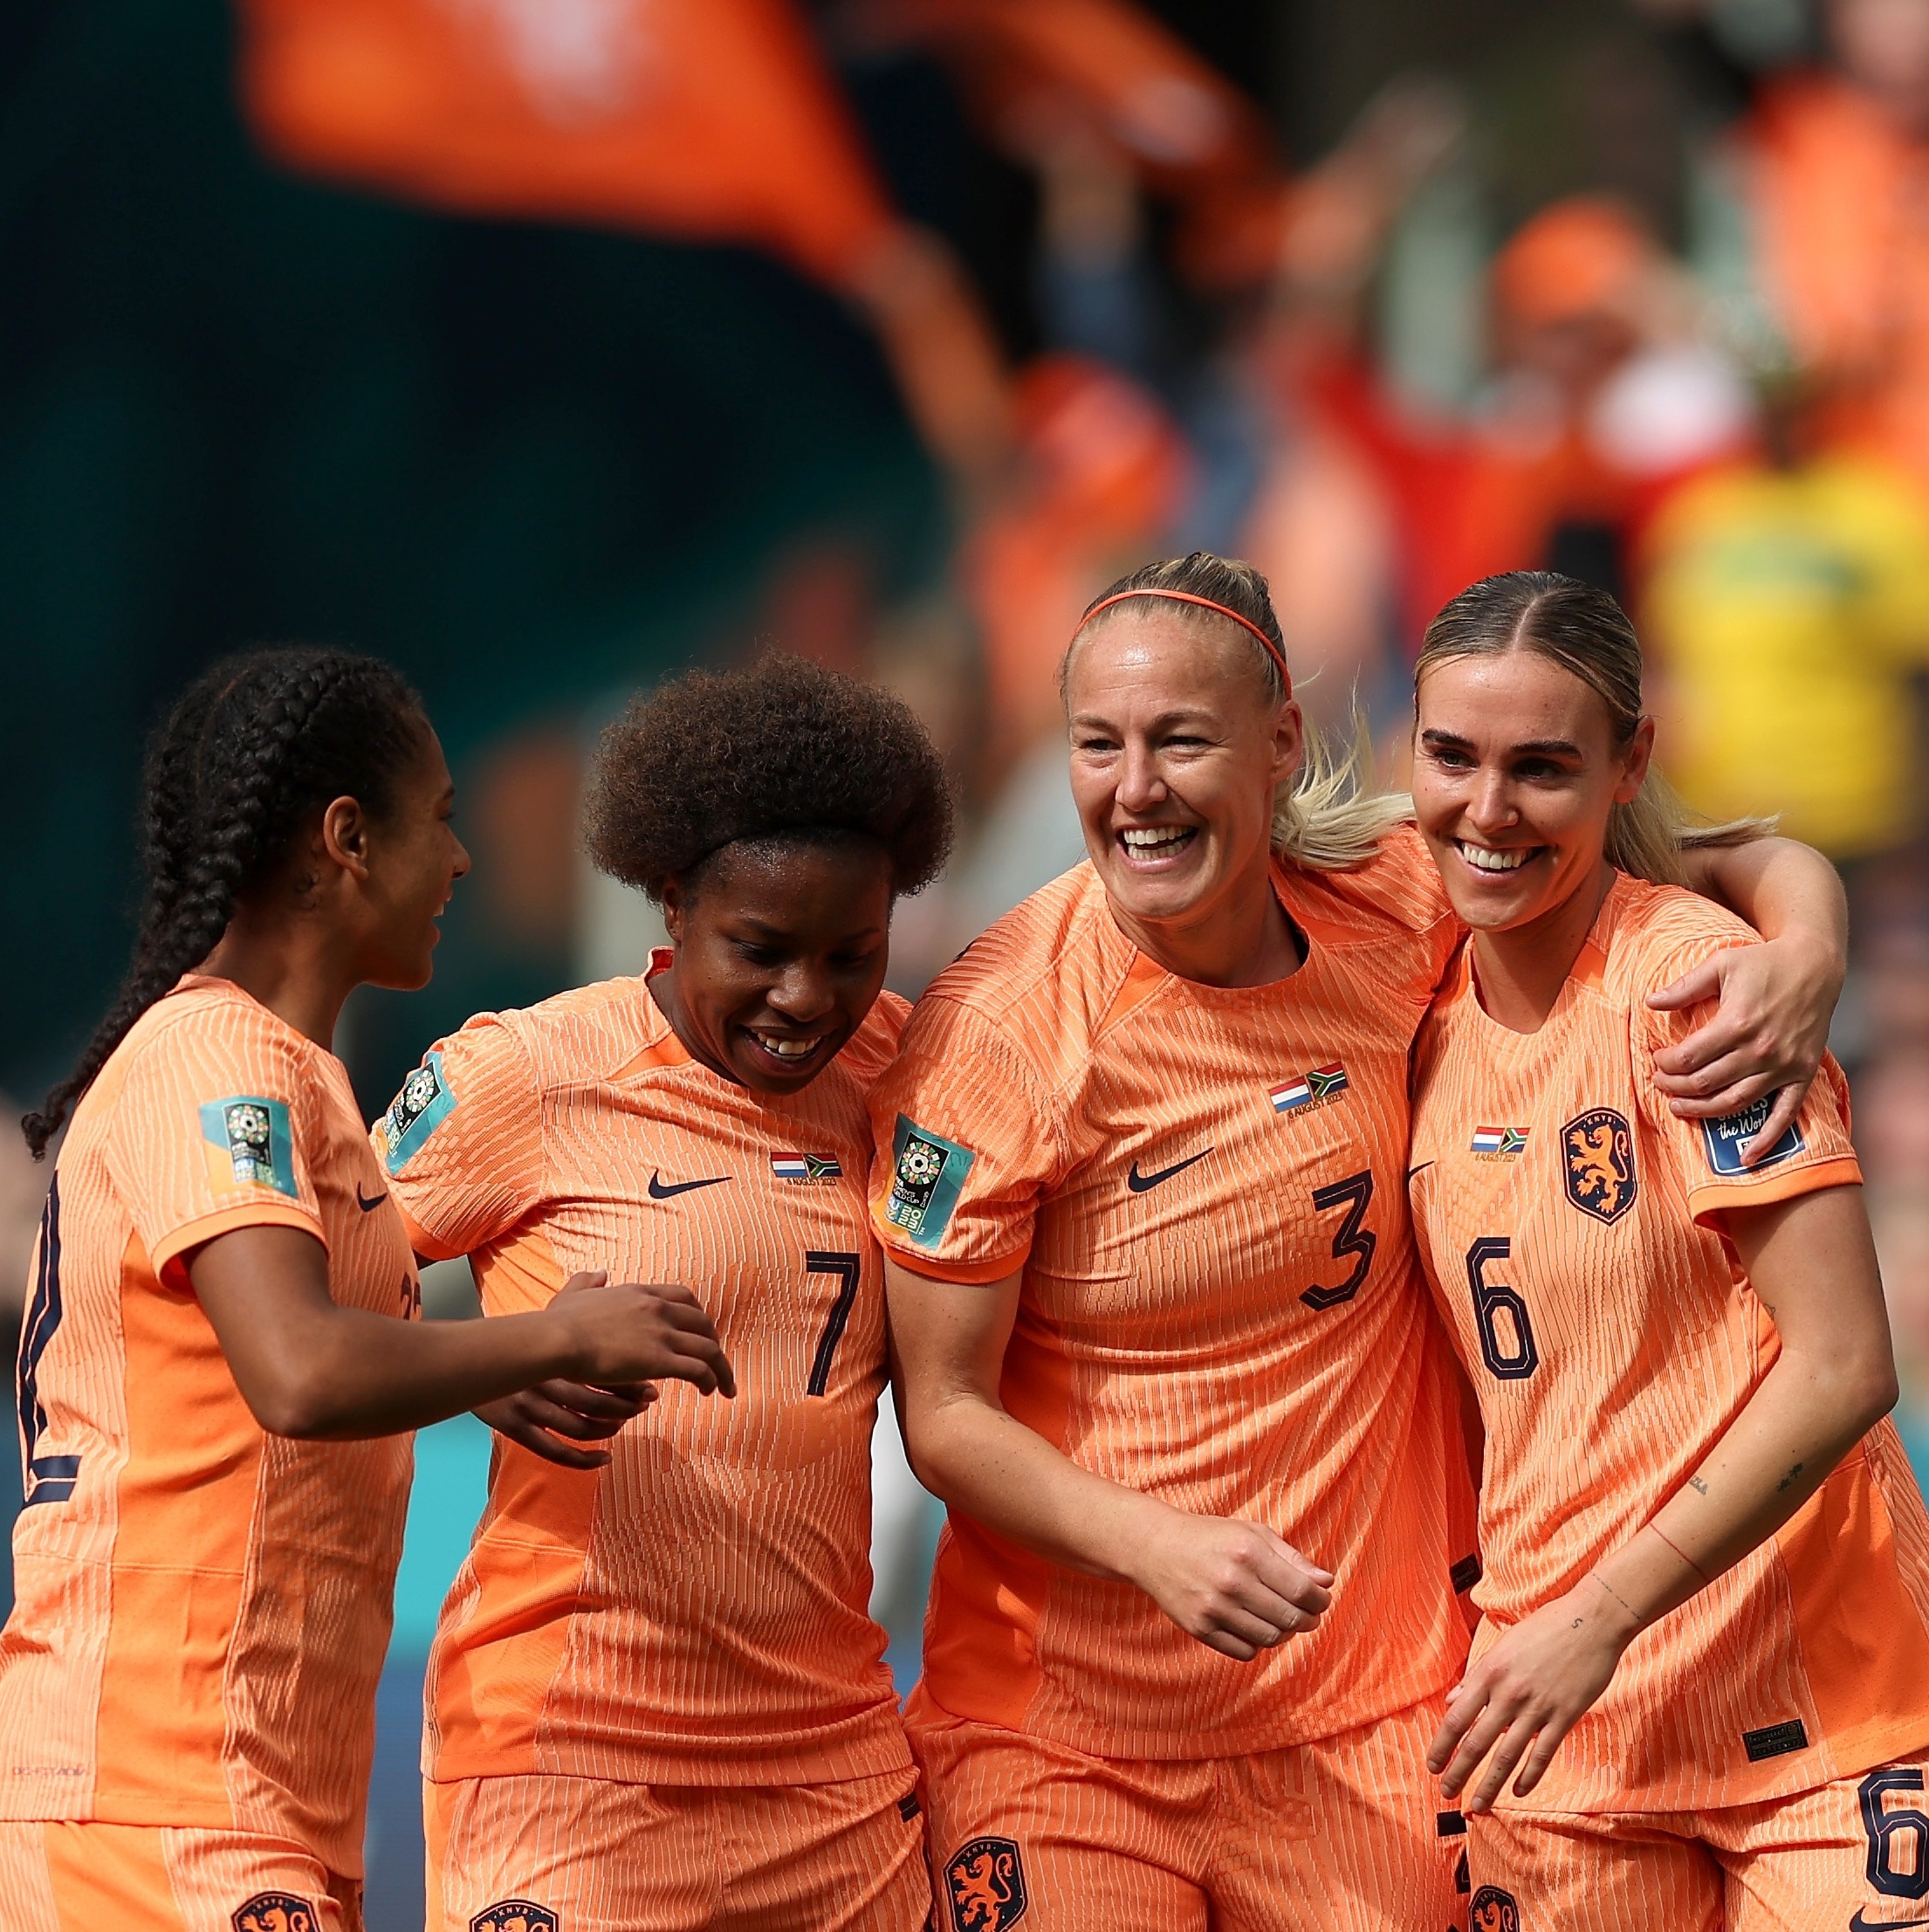 Holanda vence África do Sul e está nas quartas de finais da Copa do Mundo